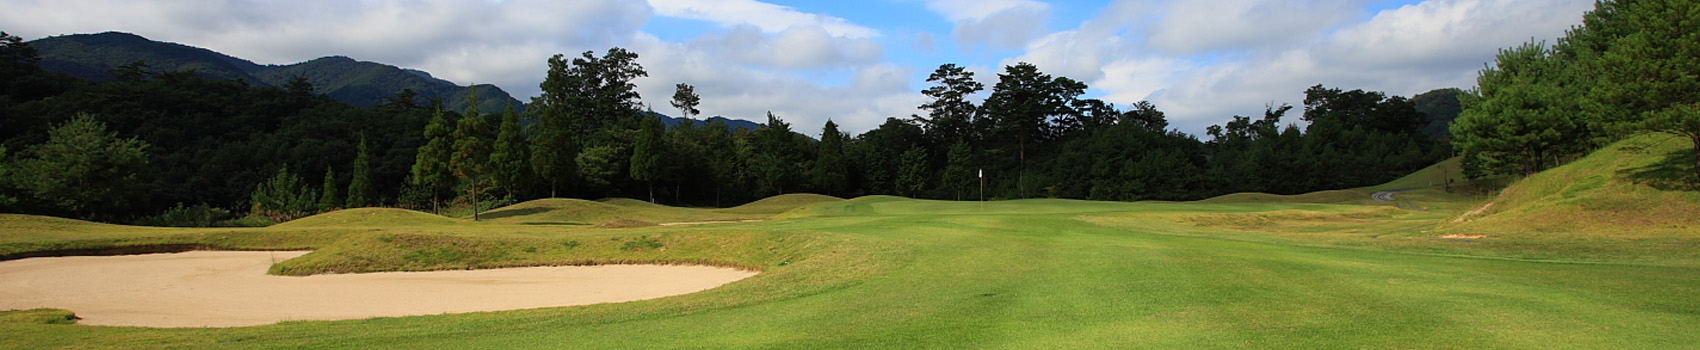 チェリーゴルフ、西日本各地でゴルフ場展開